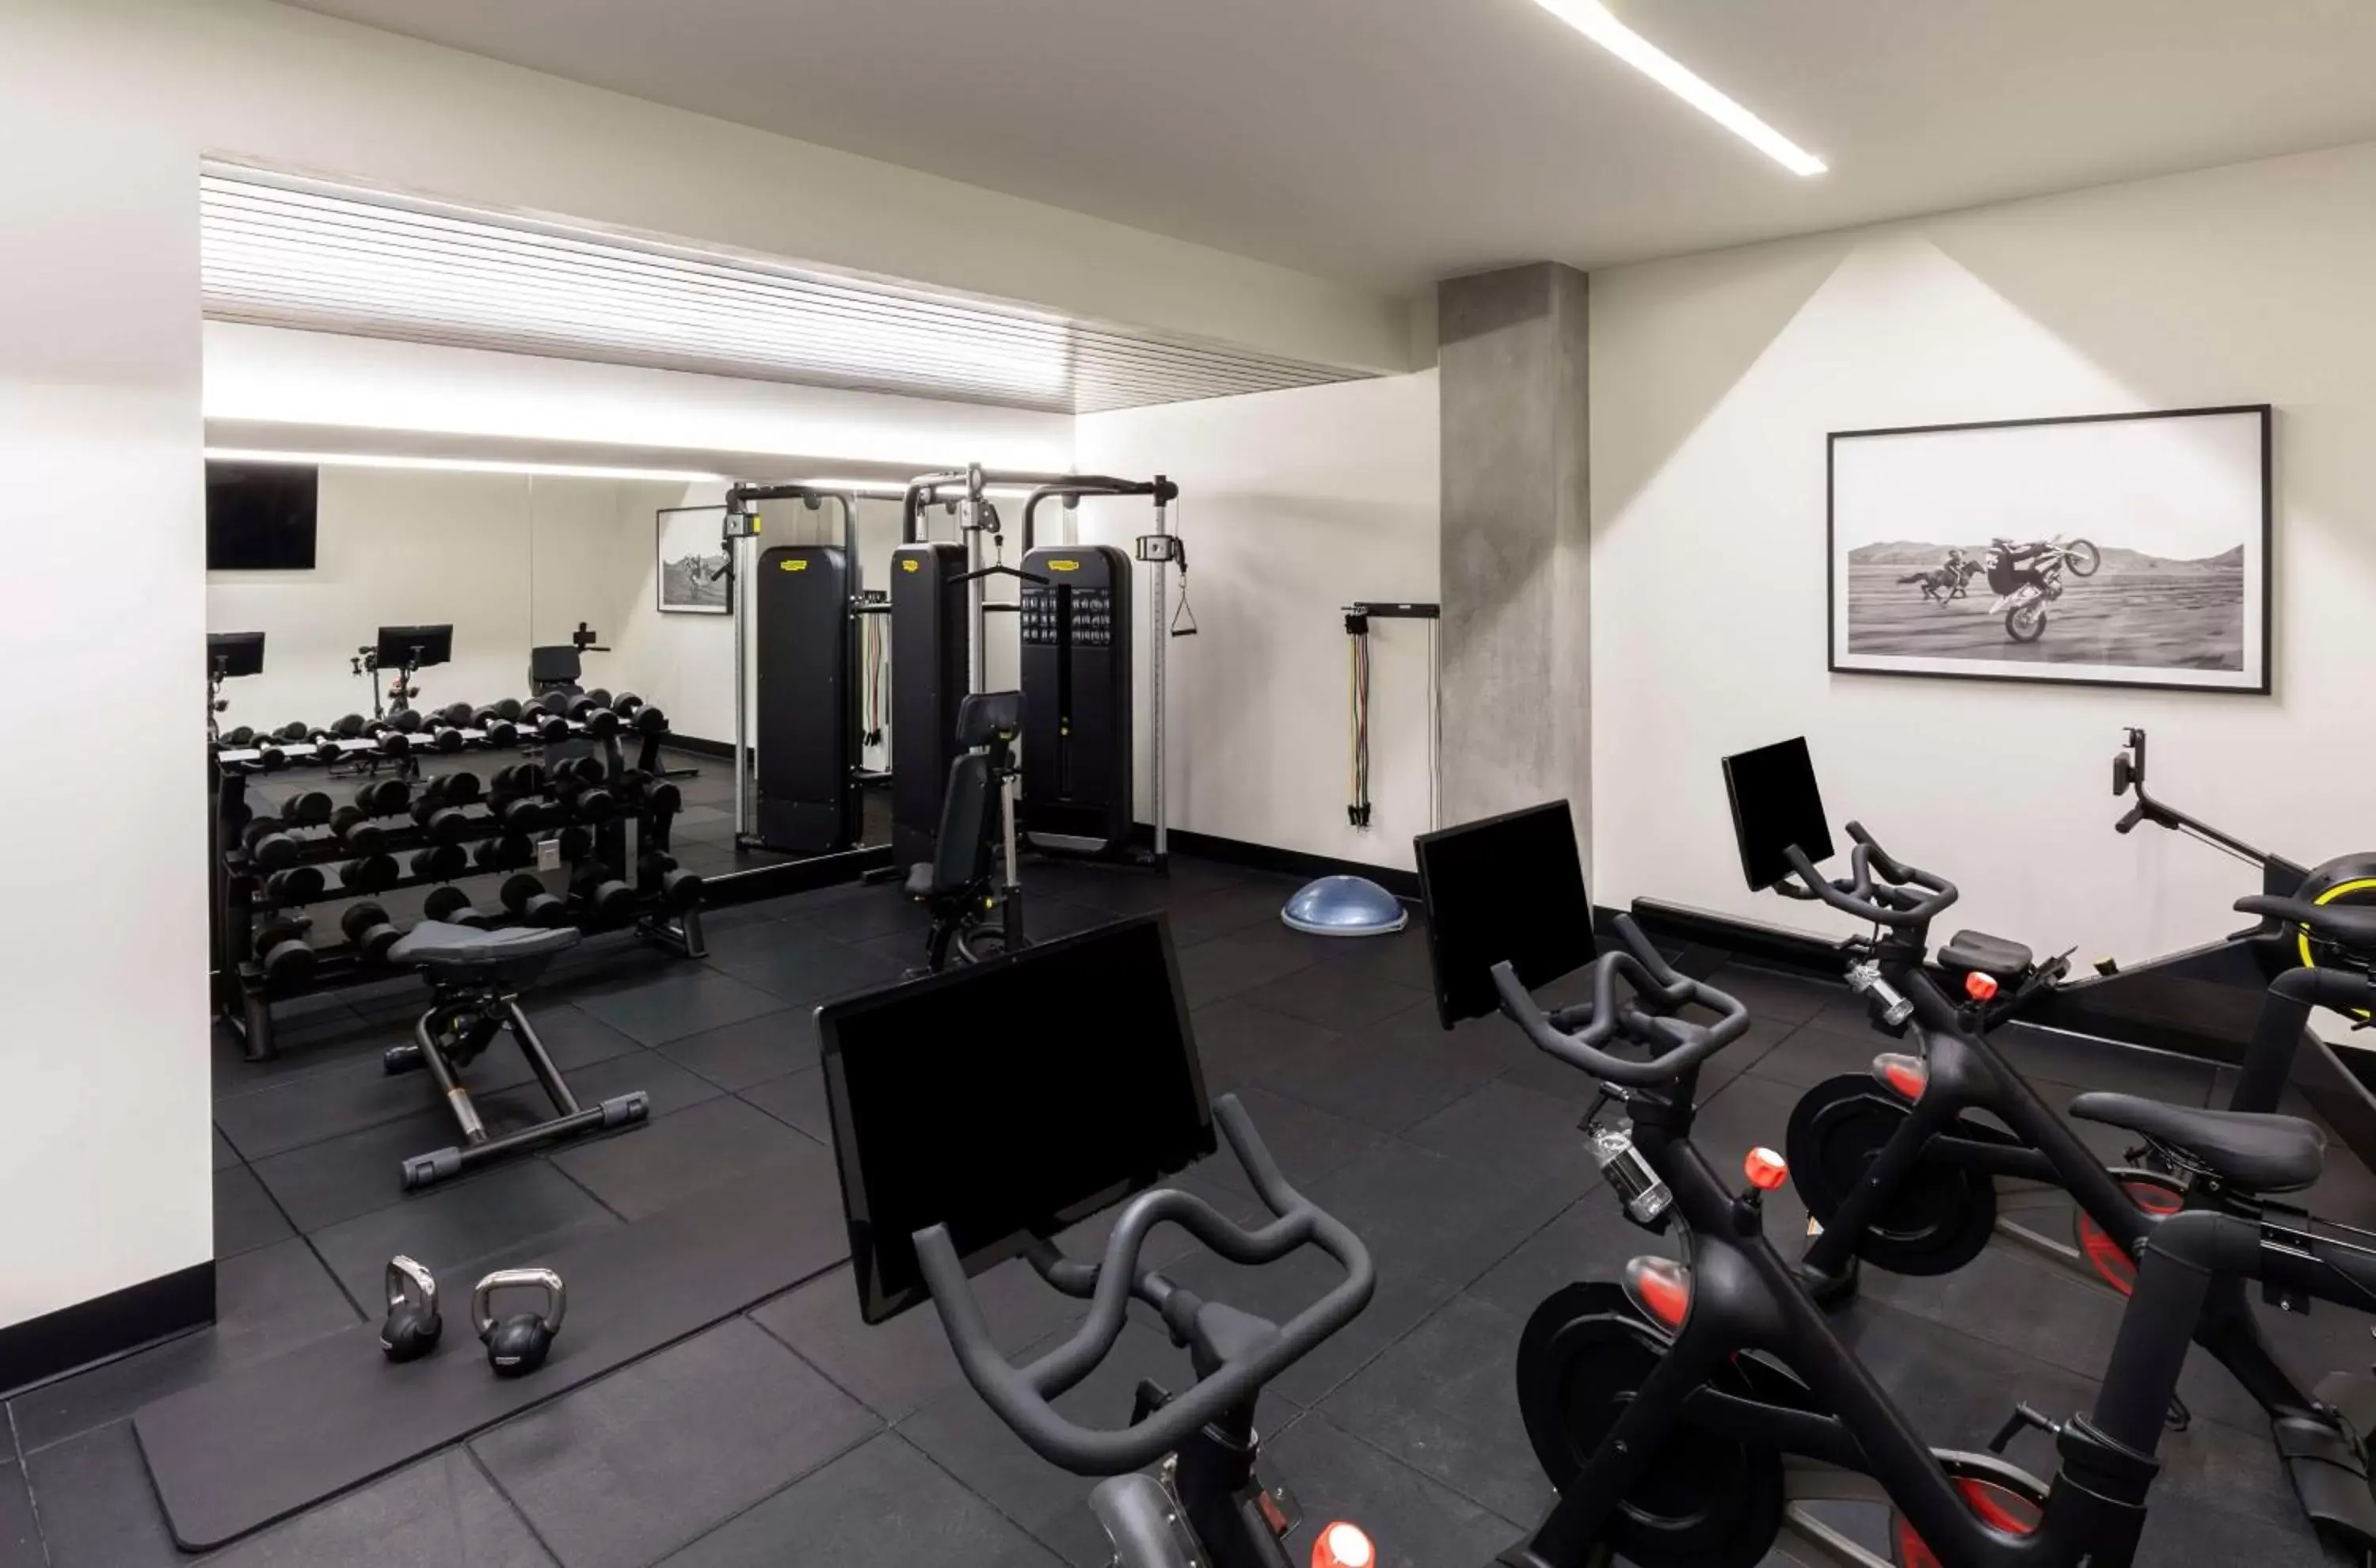 Fitness centre/facilities, Fitness Center/Facilities in Thompson Denver, part of Hyatt